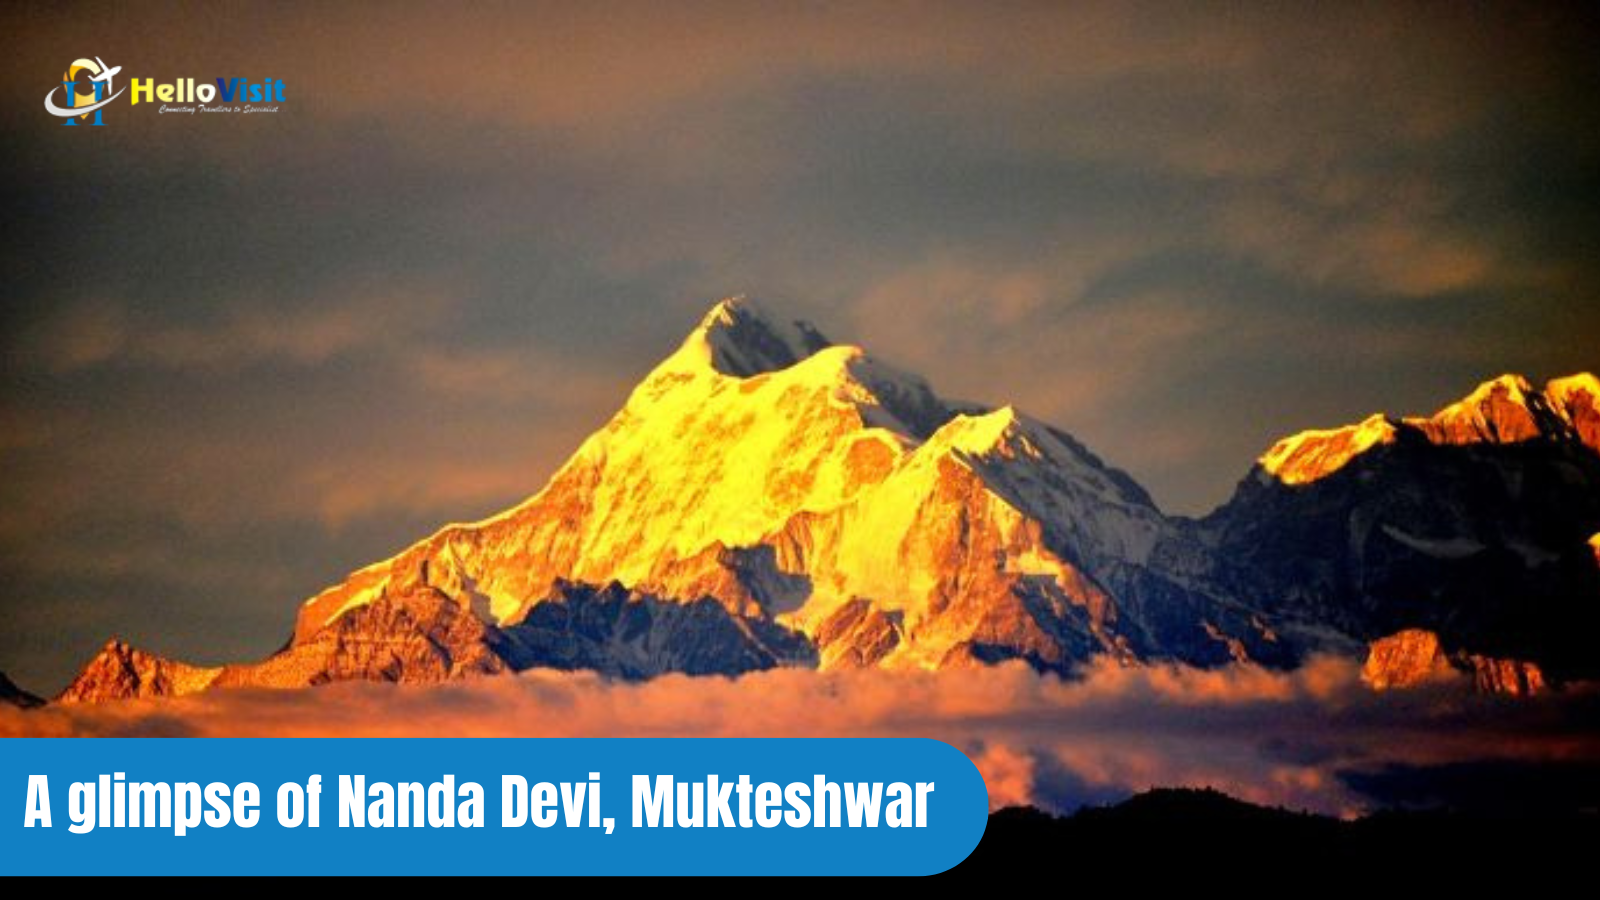 A glimpse of Nanda Devi, Mukteshwar